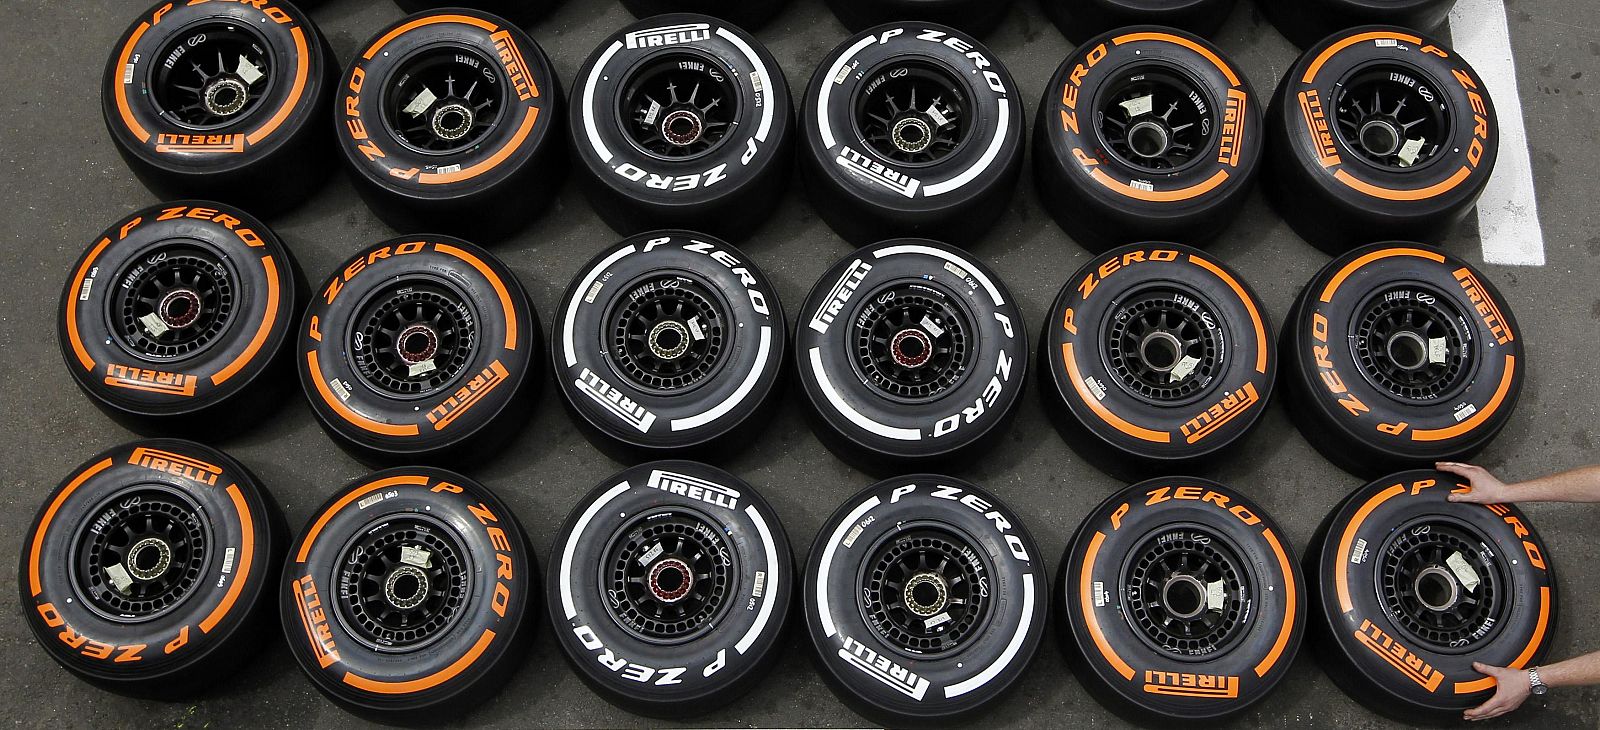 Diferentes neumáticos Pirelli utilizados en la Fórmula 1